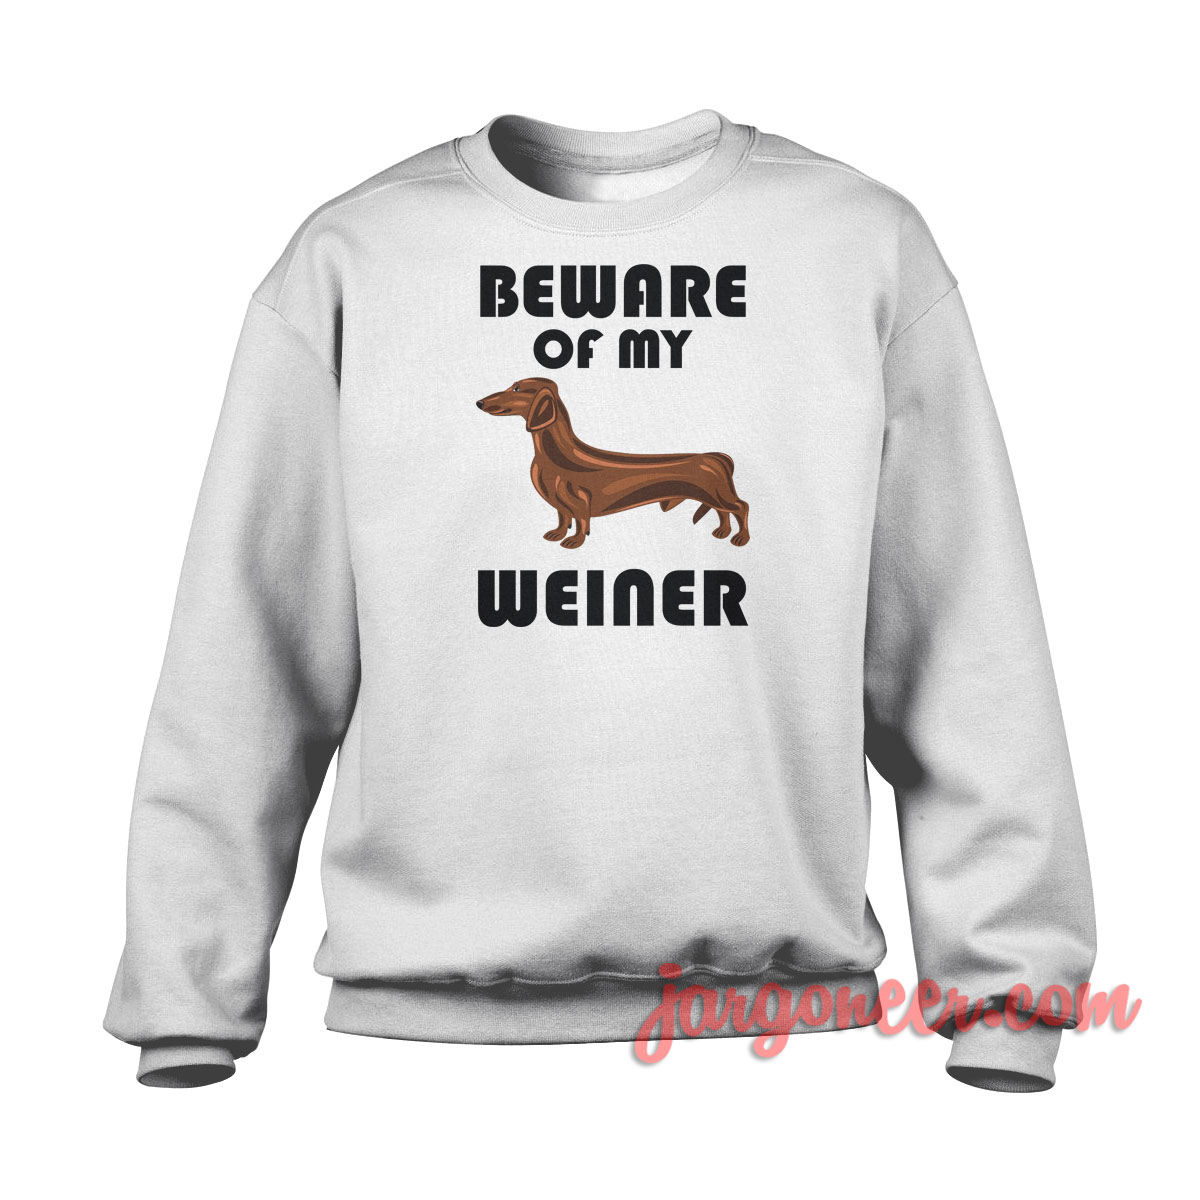 Beware Of My Weiner 1 - Shop Unique Graphic Cool Shirt Designs